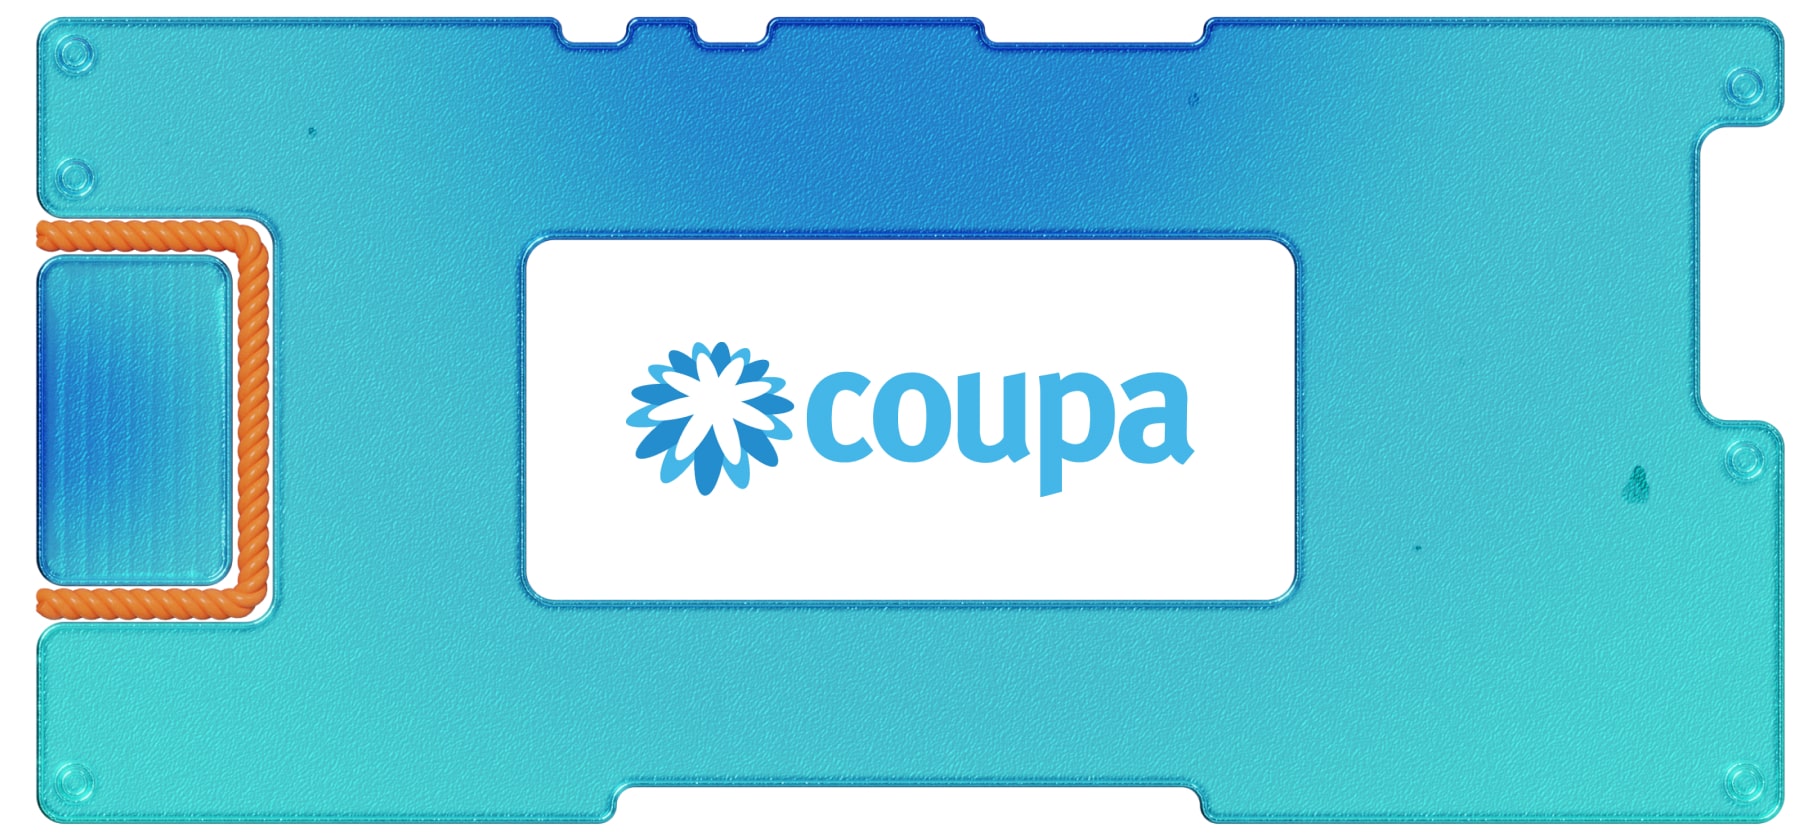 Инвестидея: Coupa Software, потому что может отскочить